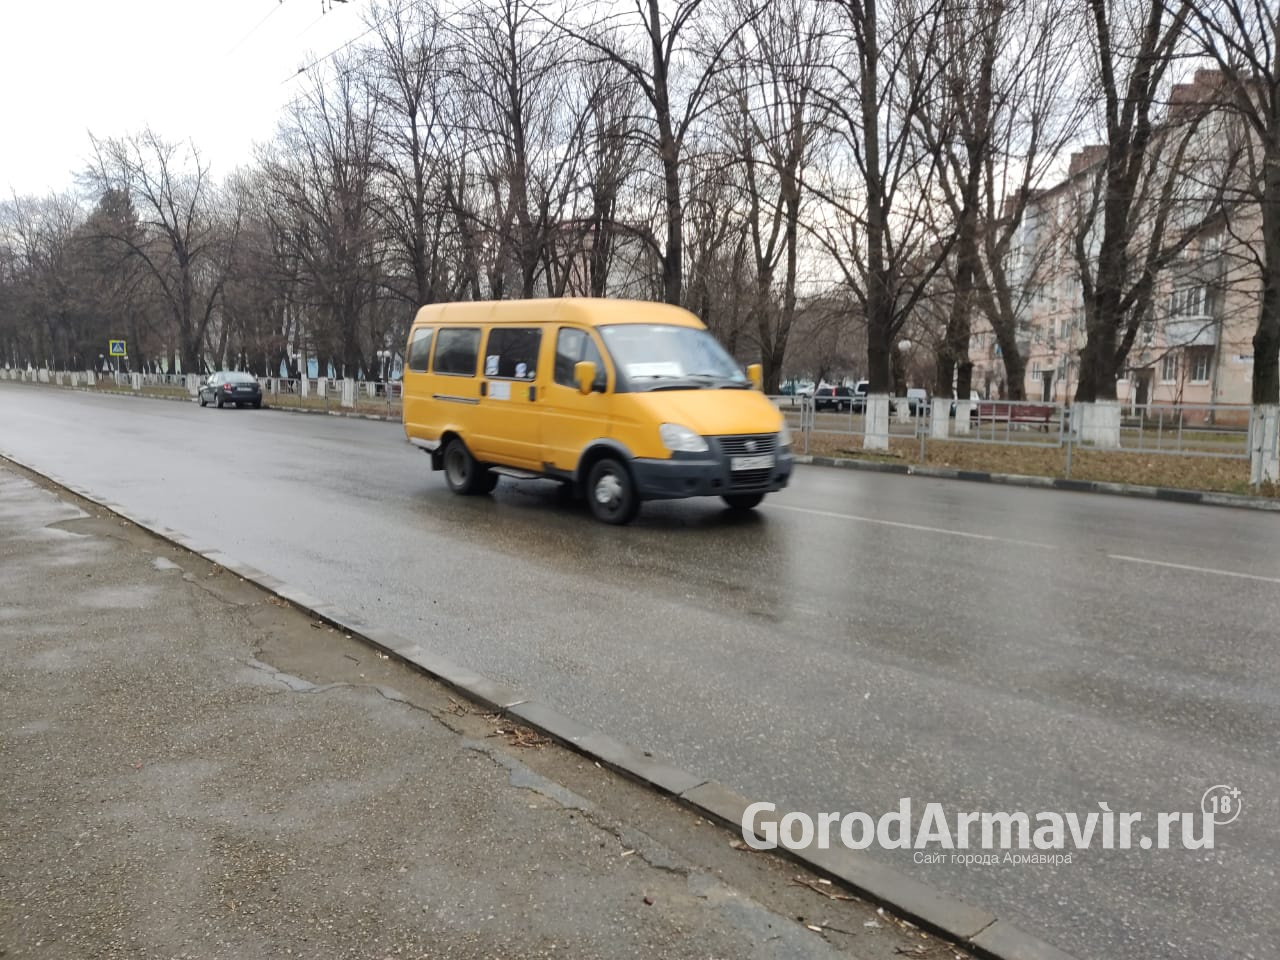 В Армавире маршрутки «ГАЗель» будут полностью заменены на более вместительные автобусы 